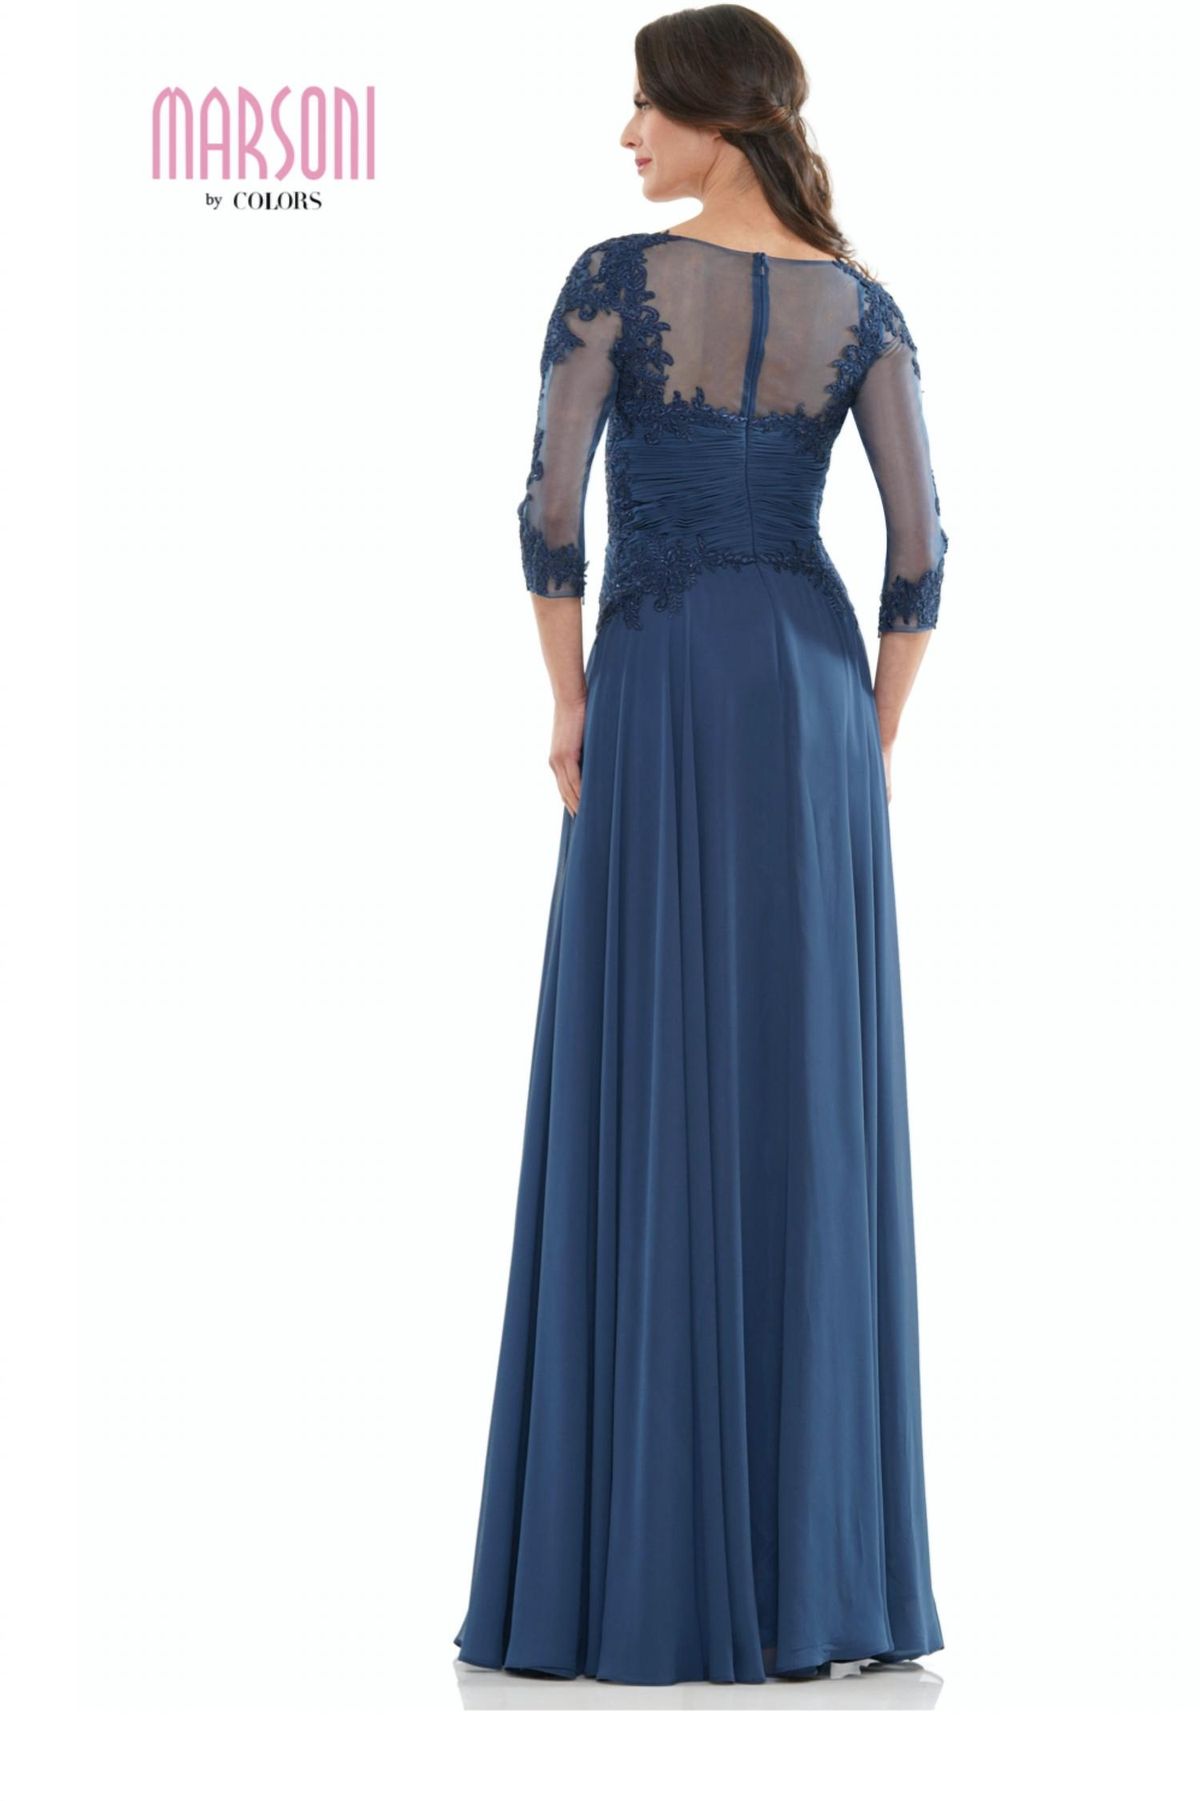 Style 1-1007185841-1901 COLORS DRESS Size 6 Bridesmaid Lace Blue